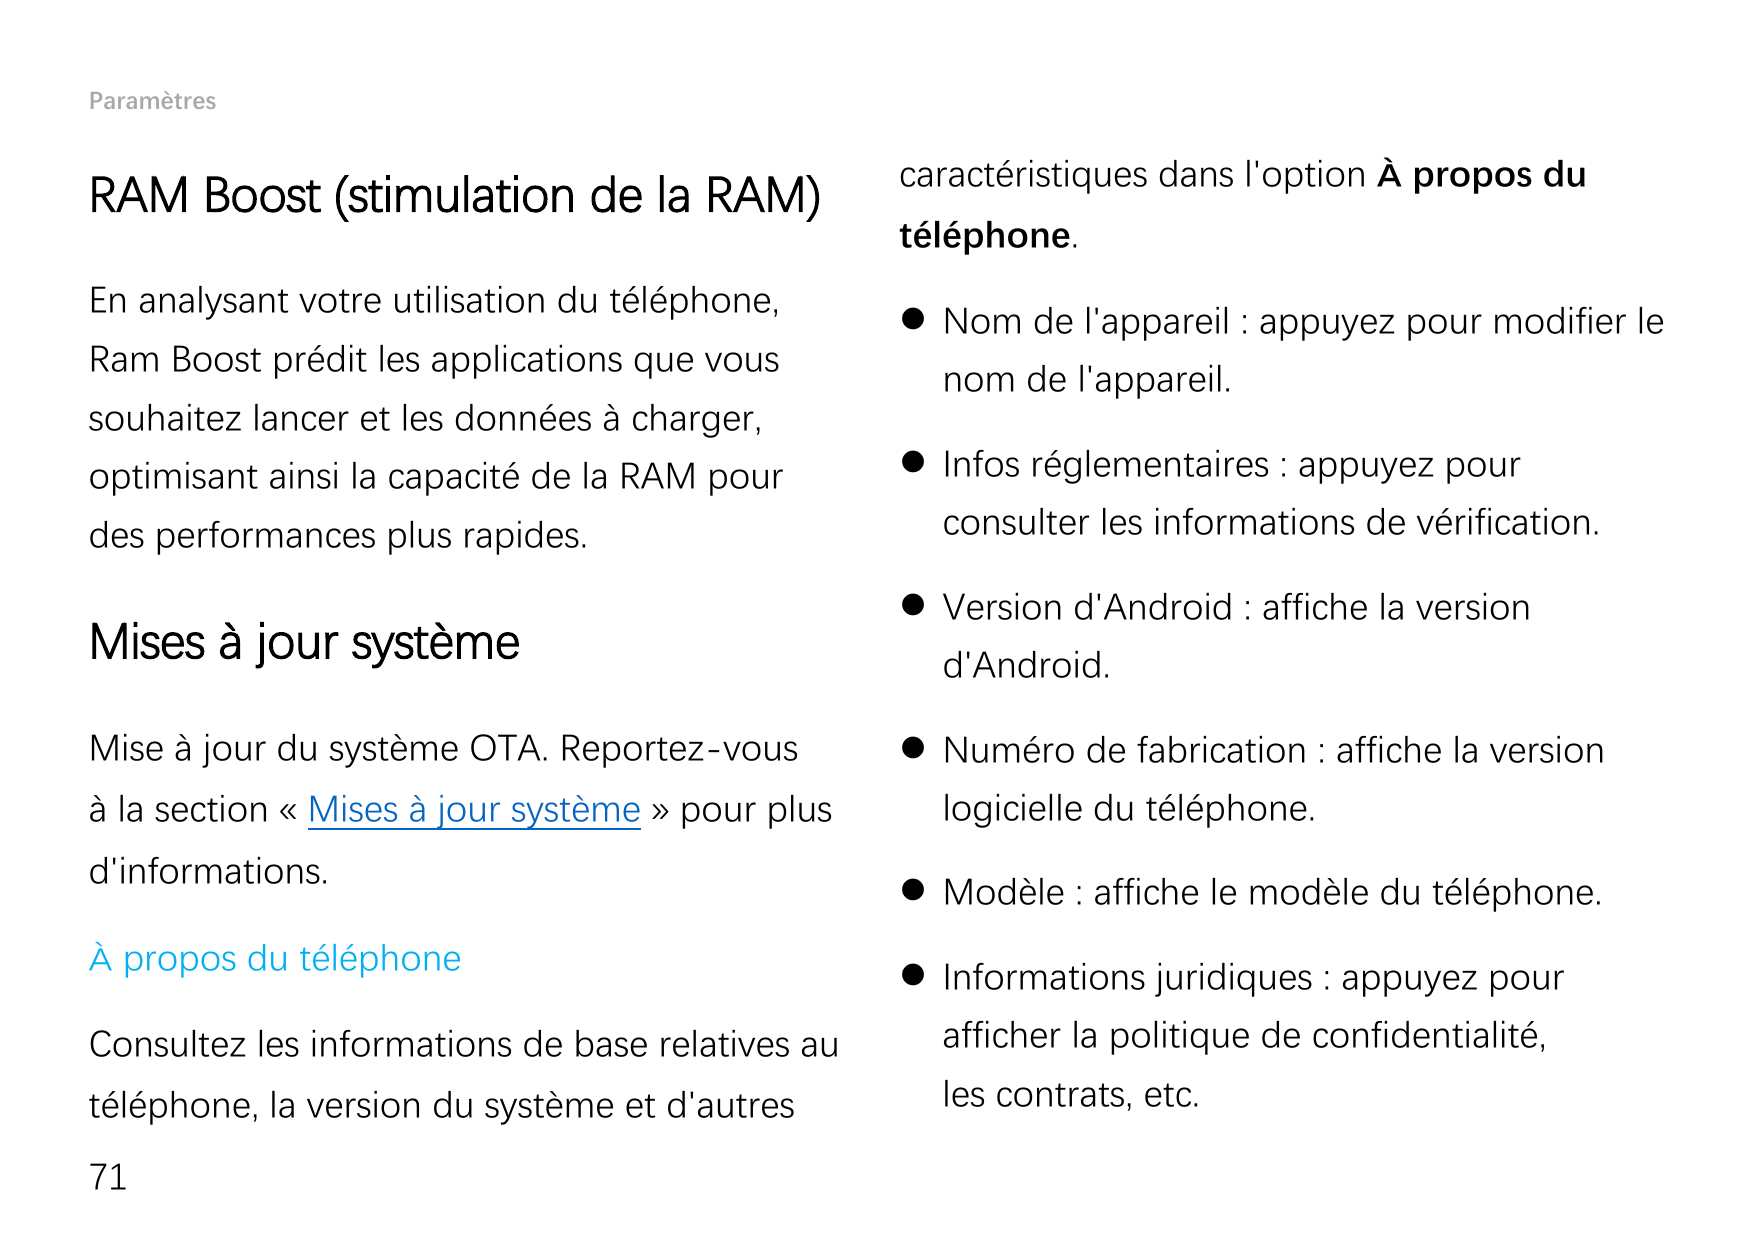 ParamètresRAM Boost (stimulation de la RAM)En analysant votre utilisation du téléphone,Ram Boost prédit les applications que vou